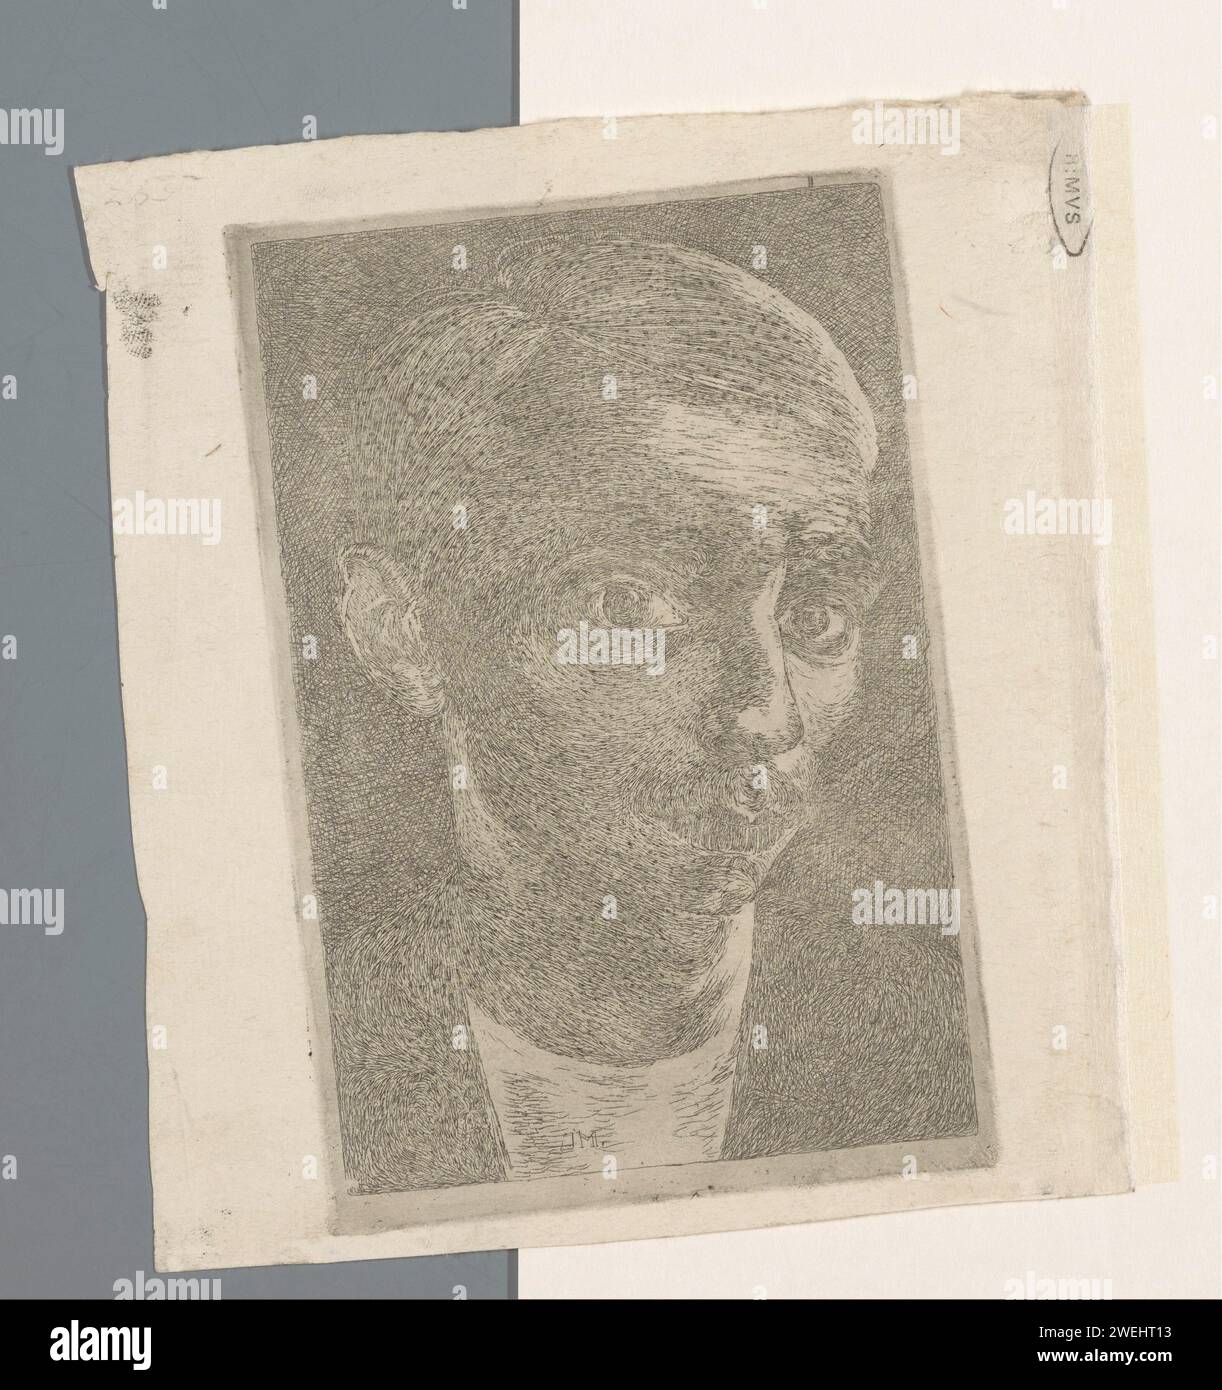 Autoritratto con baffi, Jan Mankes, ritratto inciso su carta con stampa 1915, autoritratto dell'artista Foto Stock